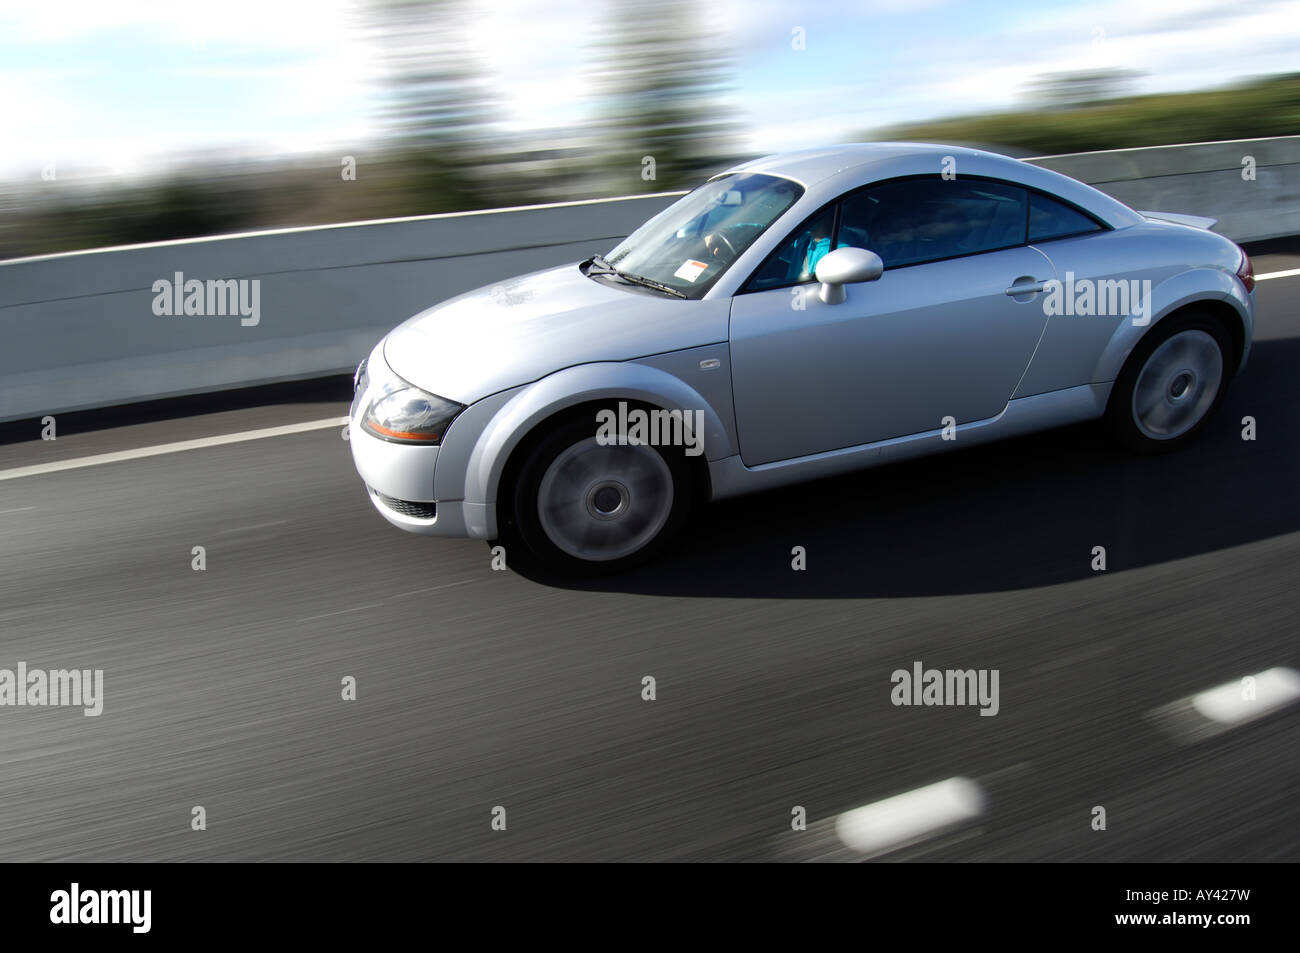 Voiture de sport Audi TT d'argent en vitesse sur une autoroute Banque D'Images